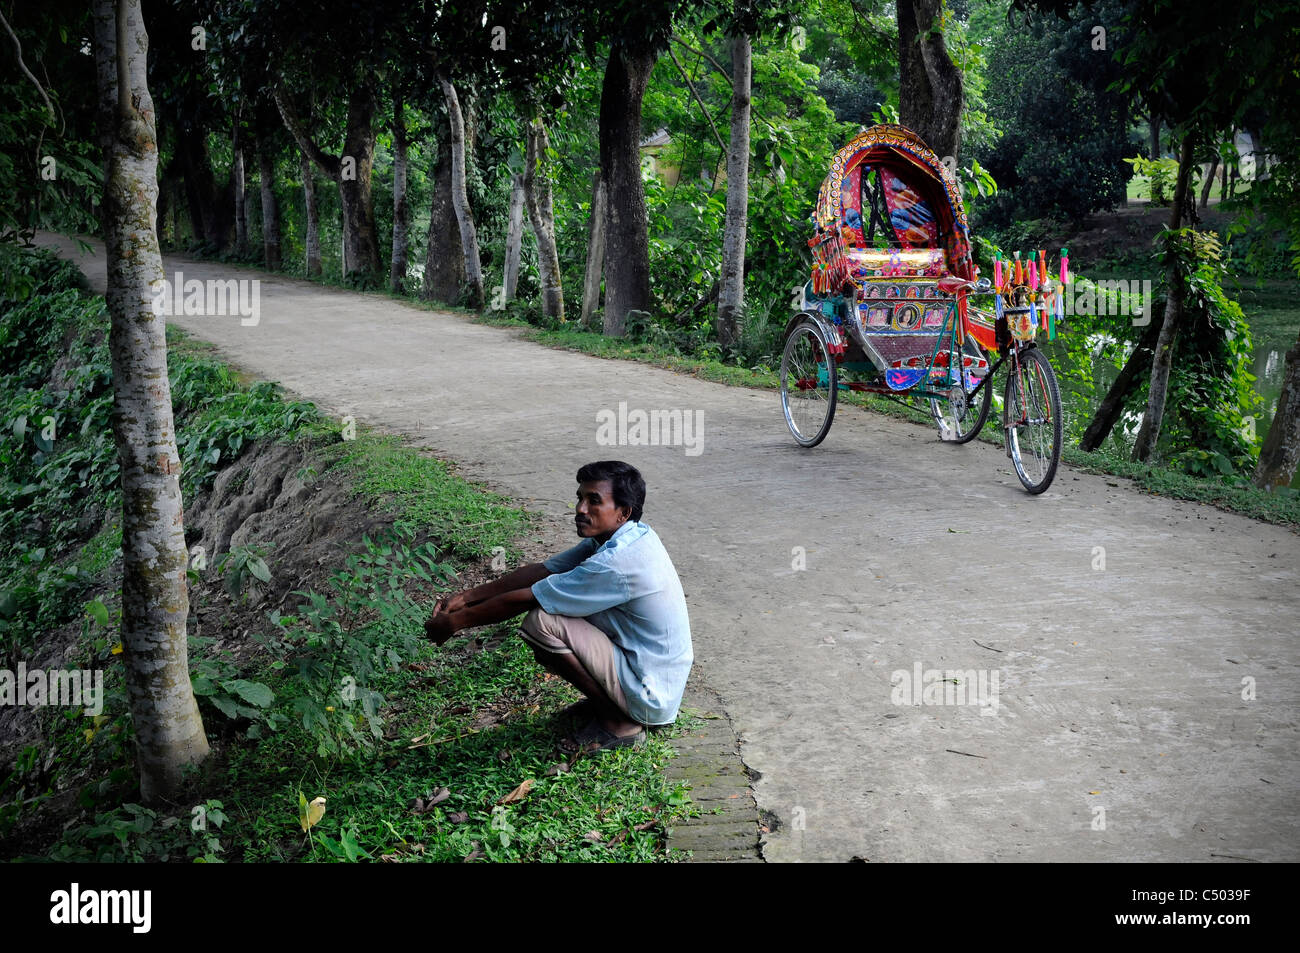 Rikscha auf dem Lande in Bangladesch Stockfoto